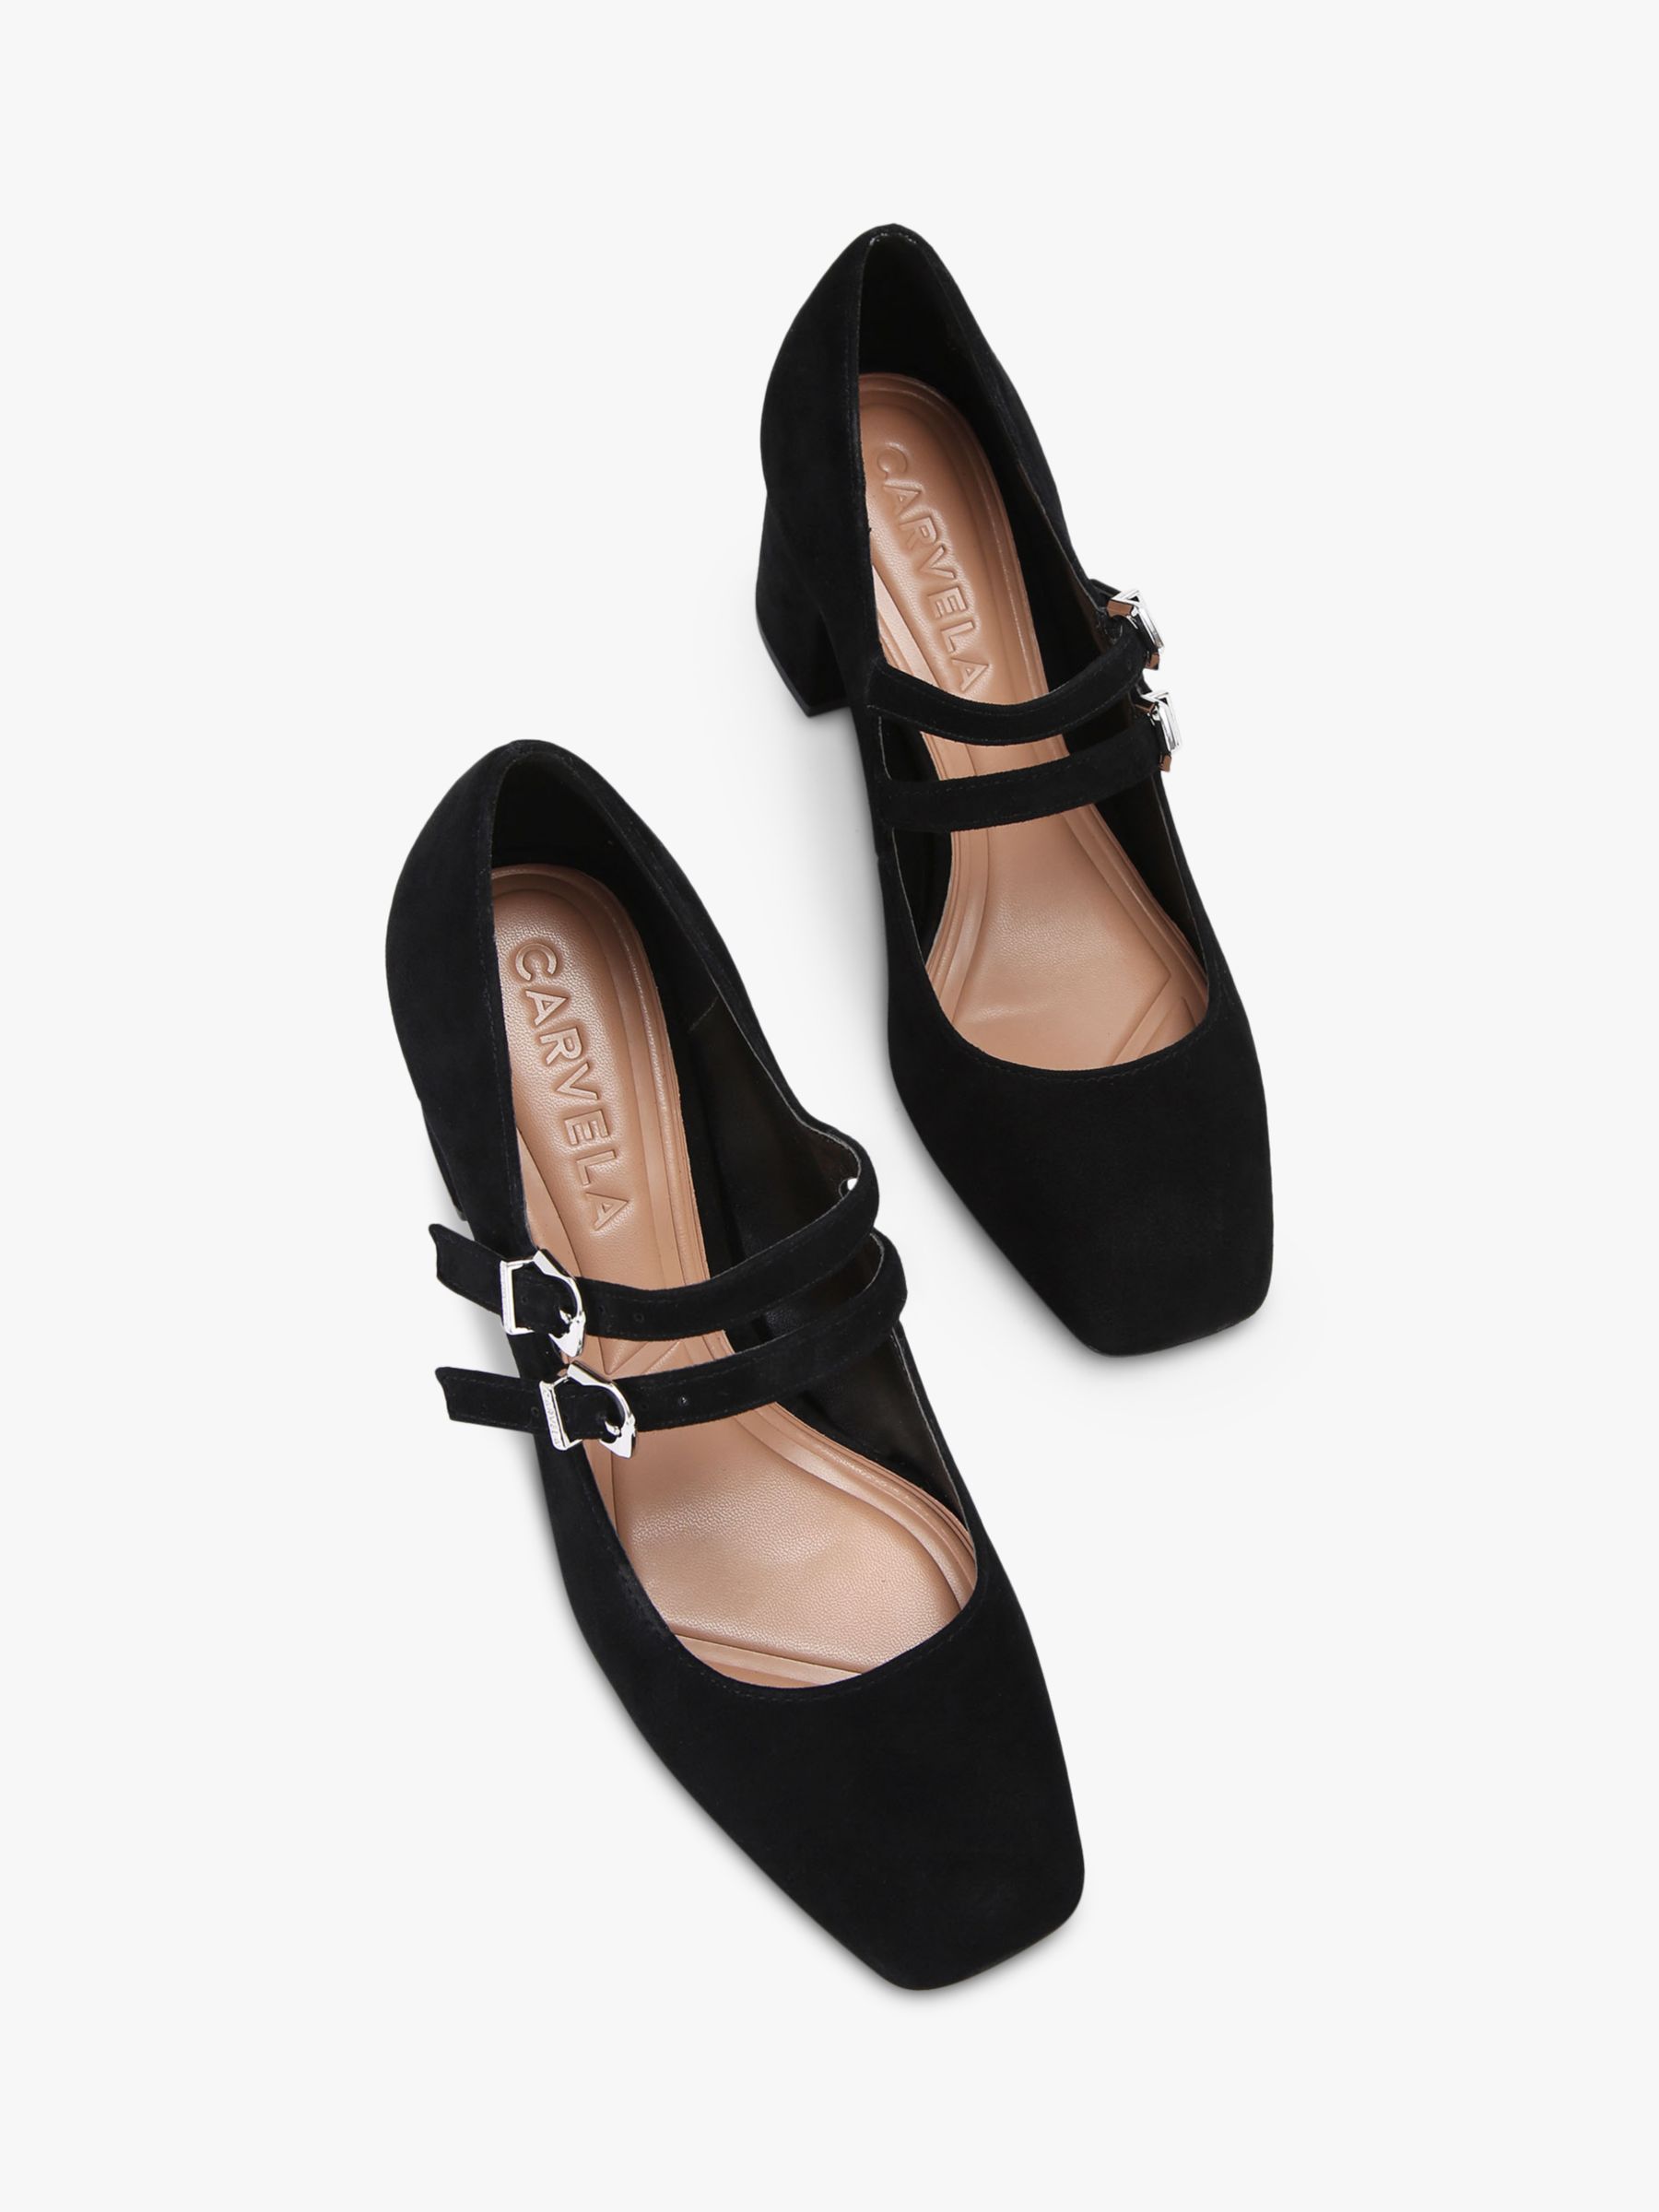 Carvela Harper Suede Court Shoes, Black, 3